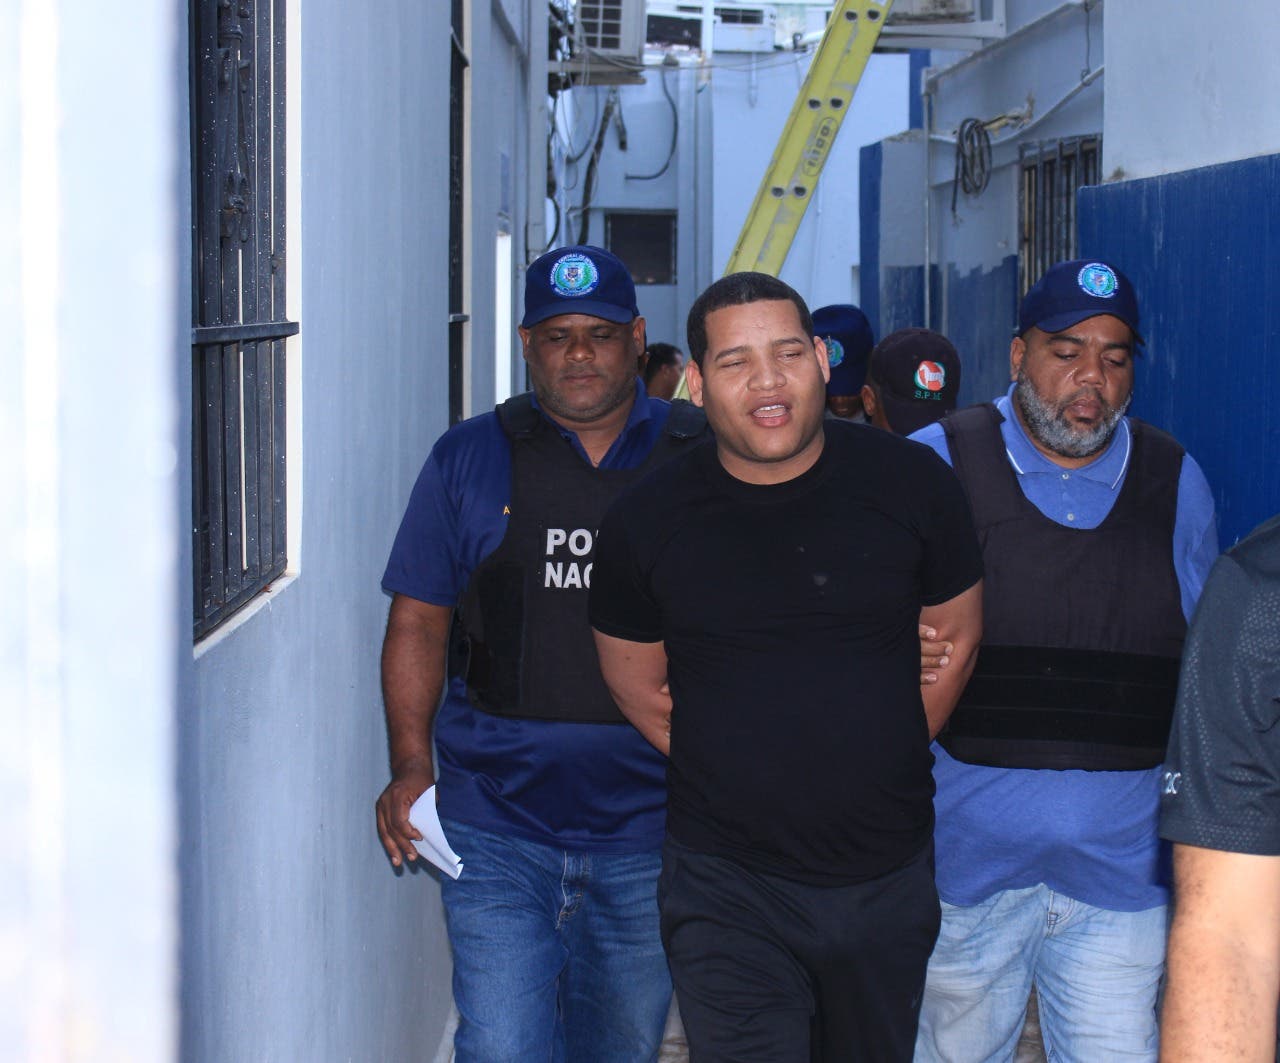 Las advertencias de estafa previo al arresto de Mantequilla, quien hoy dice ser «un preso del sistema»